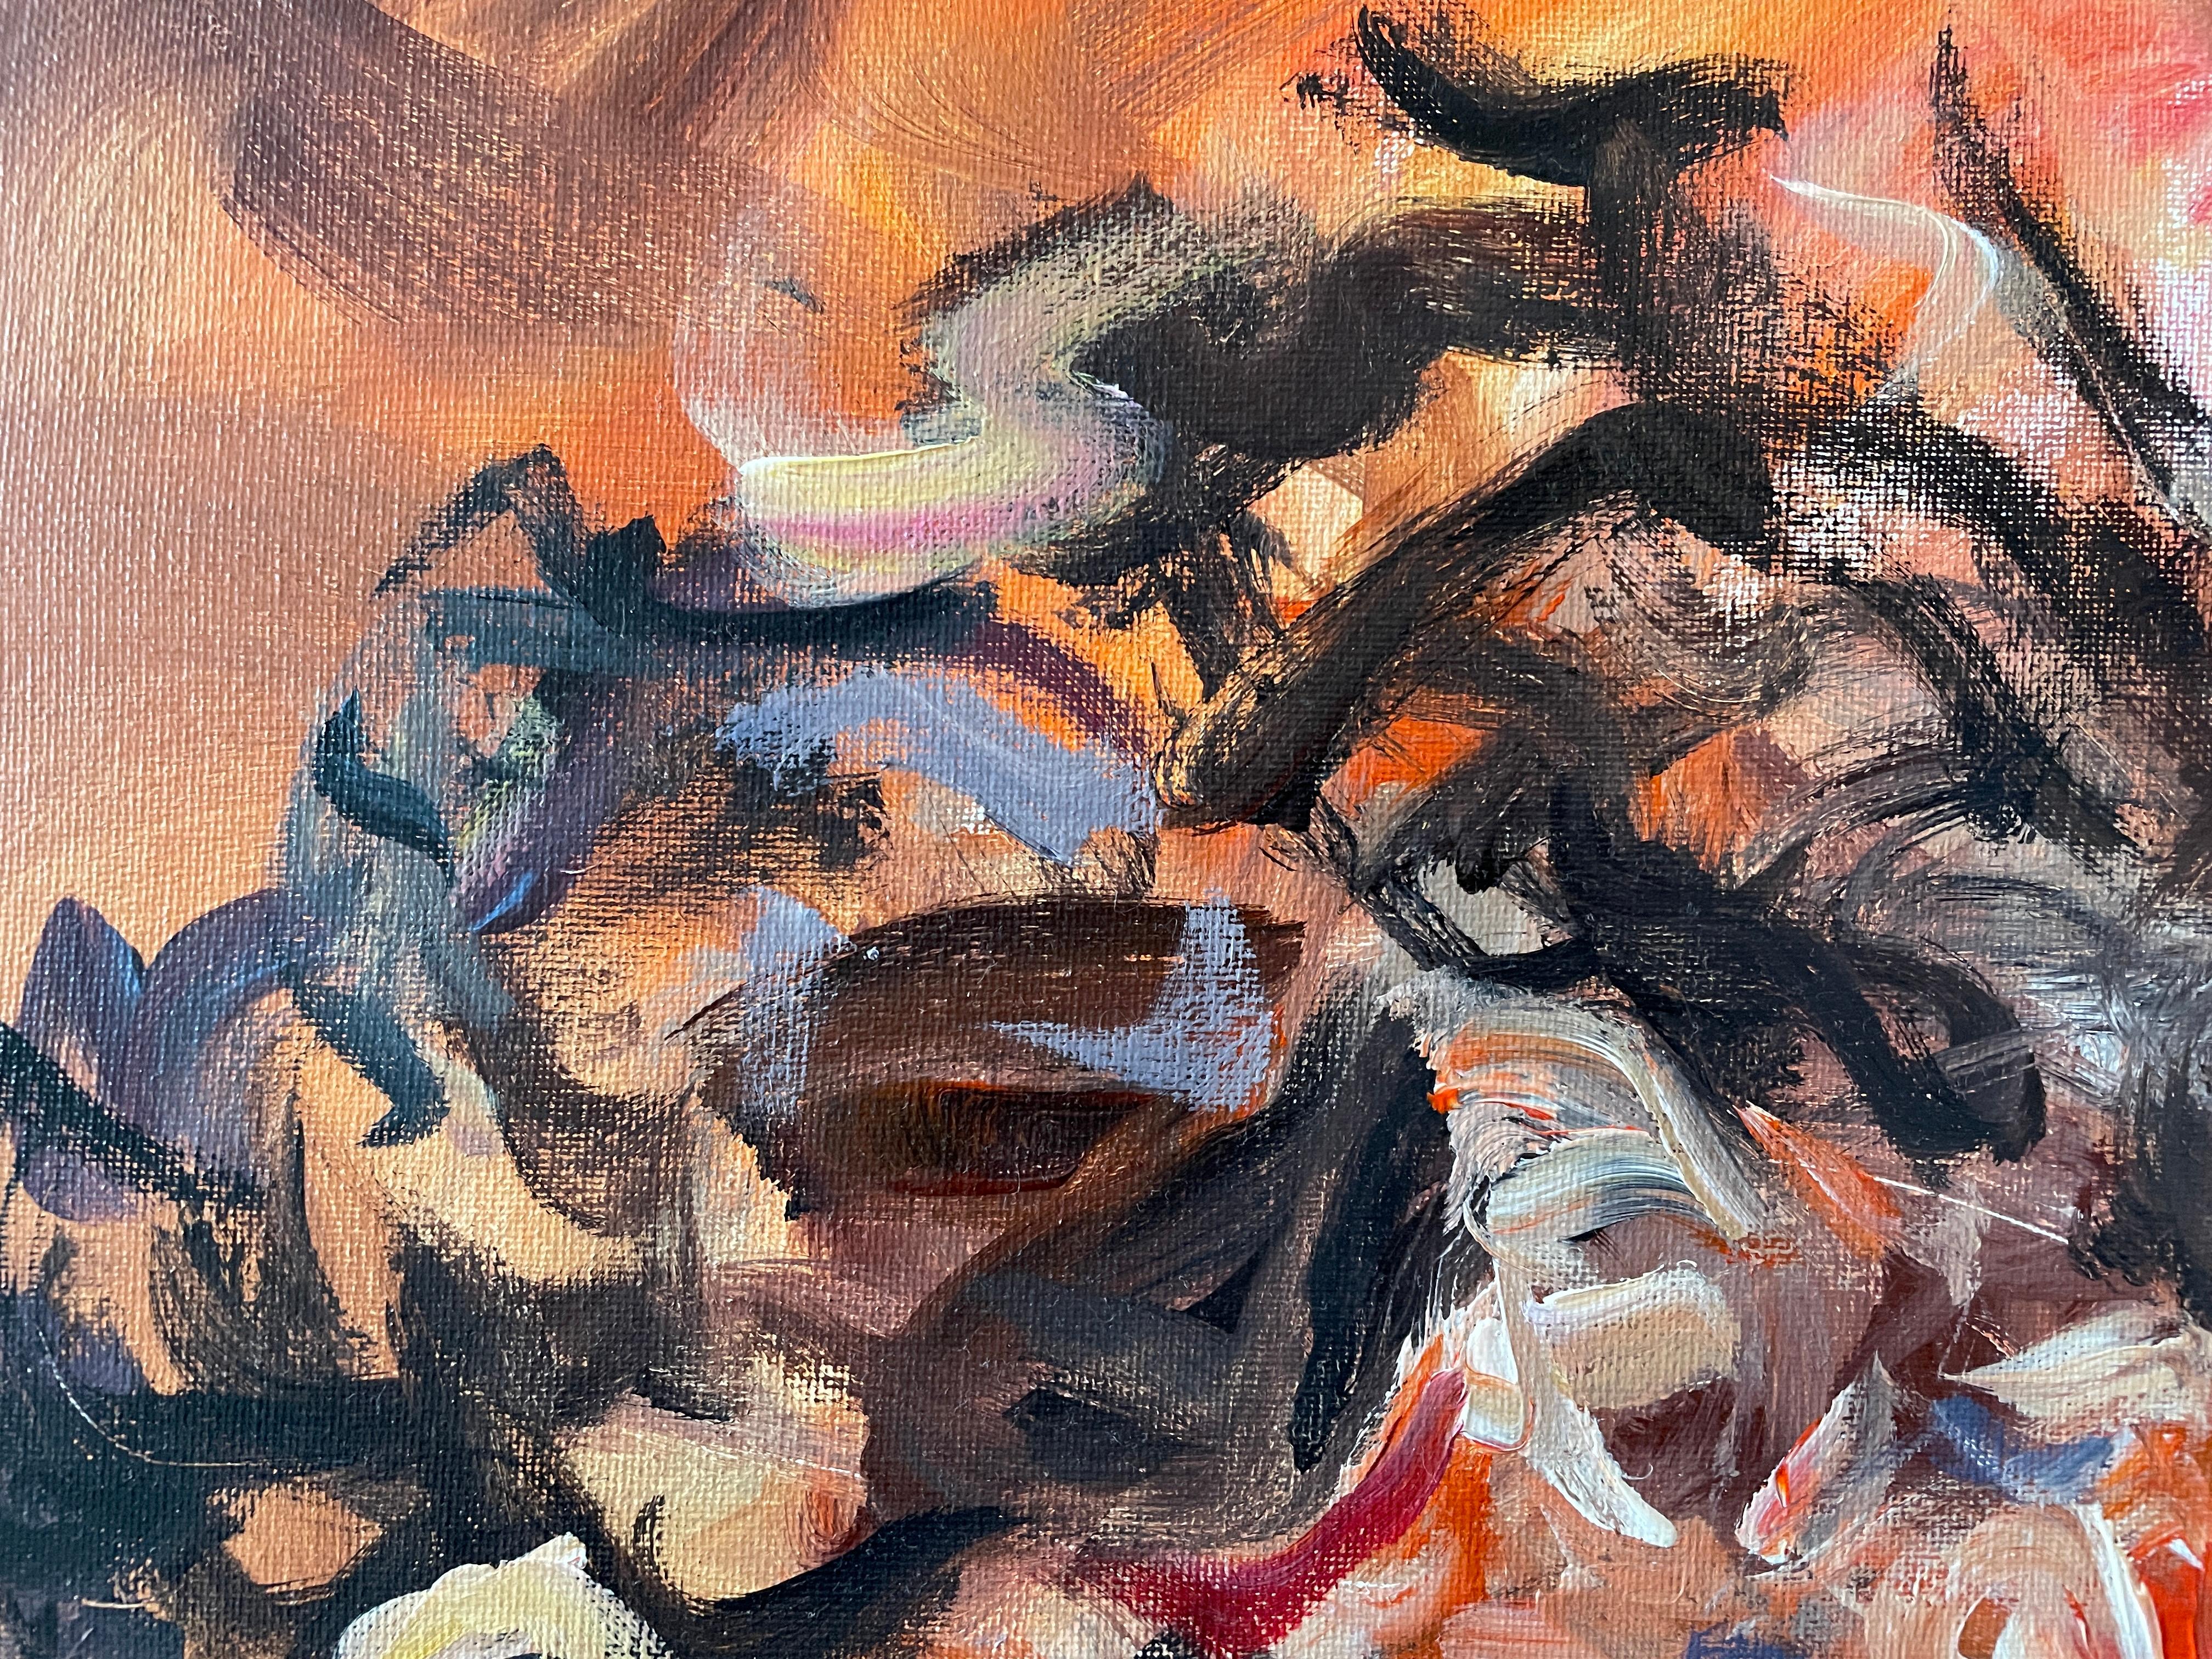 „Obsession“ Abstrakt-expressionistisches Selbstporträt in Mischtechnik von Masri – Painting von Masri Hayssam